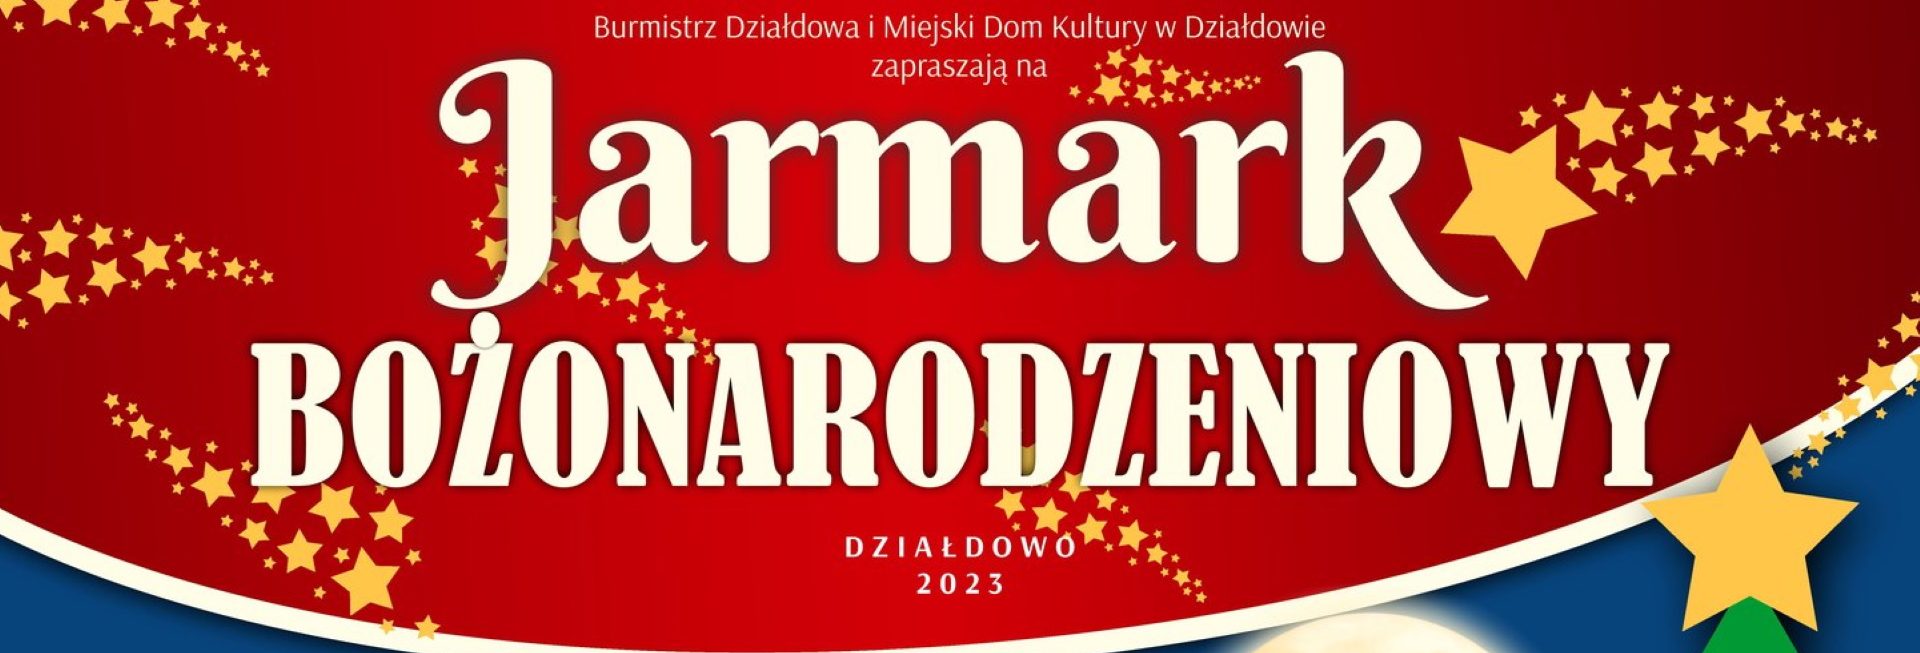 Plakat zapraszający do Działdowa na Jarmark Bożenarodzeniowy i “Odpalenie choinki” Działdowo 2023.